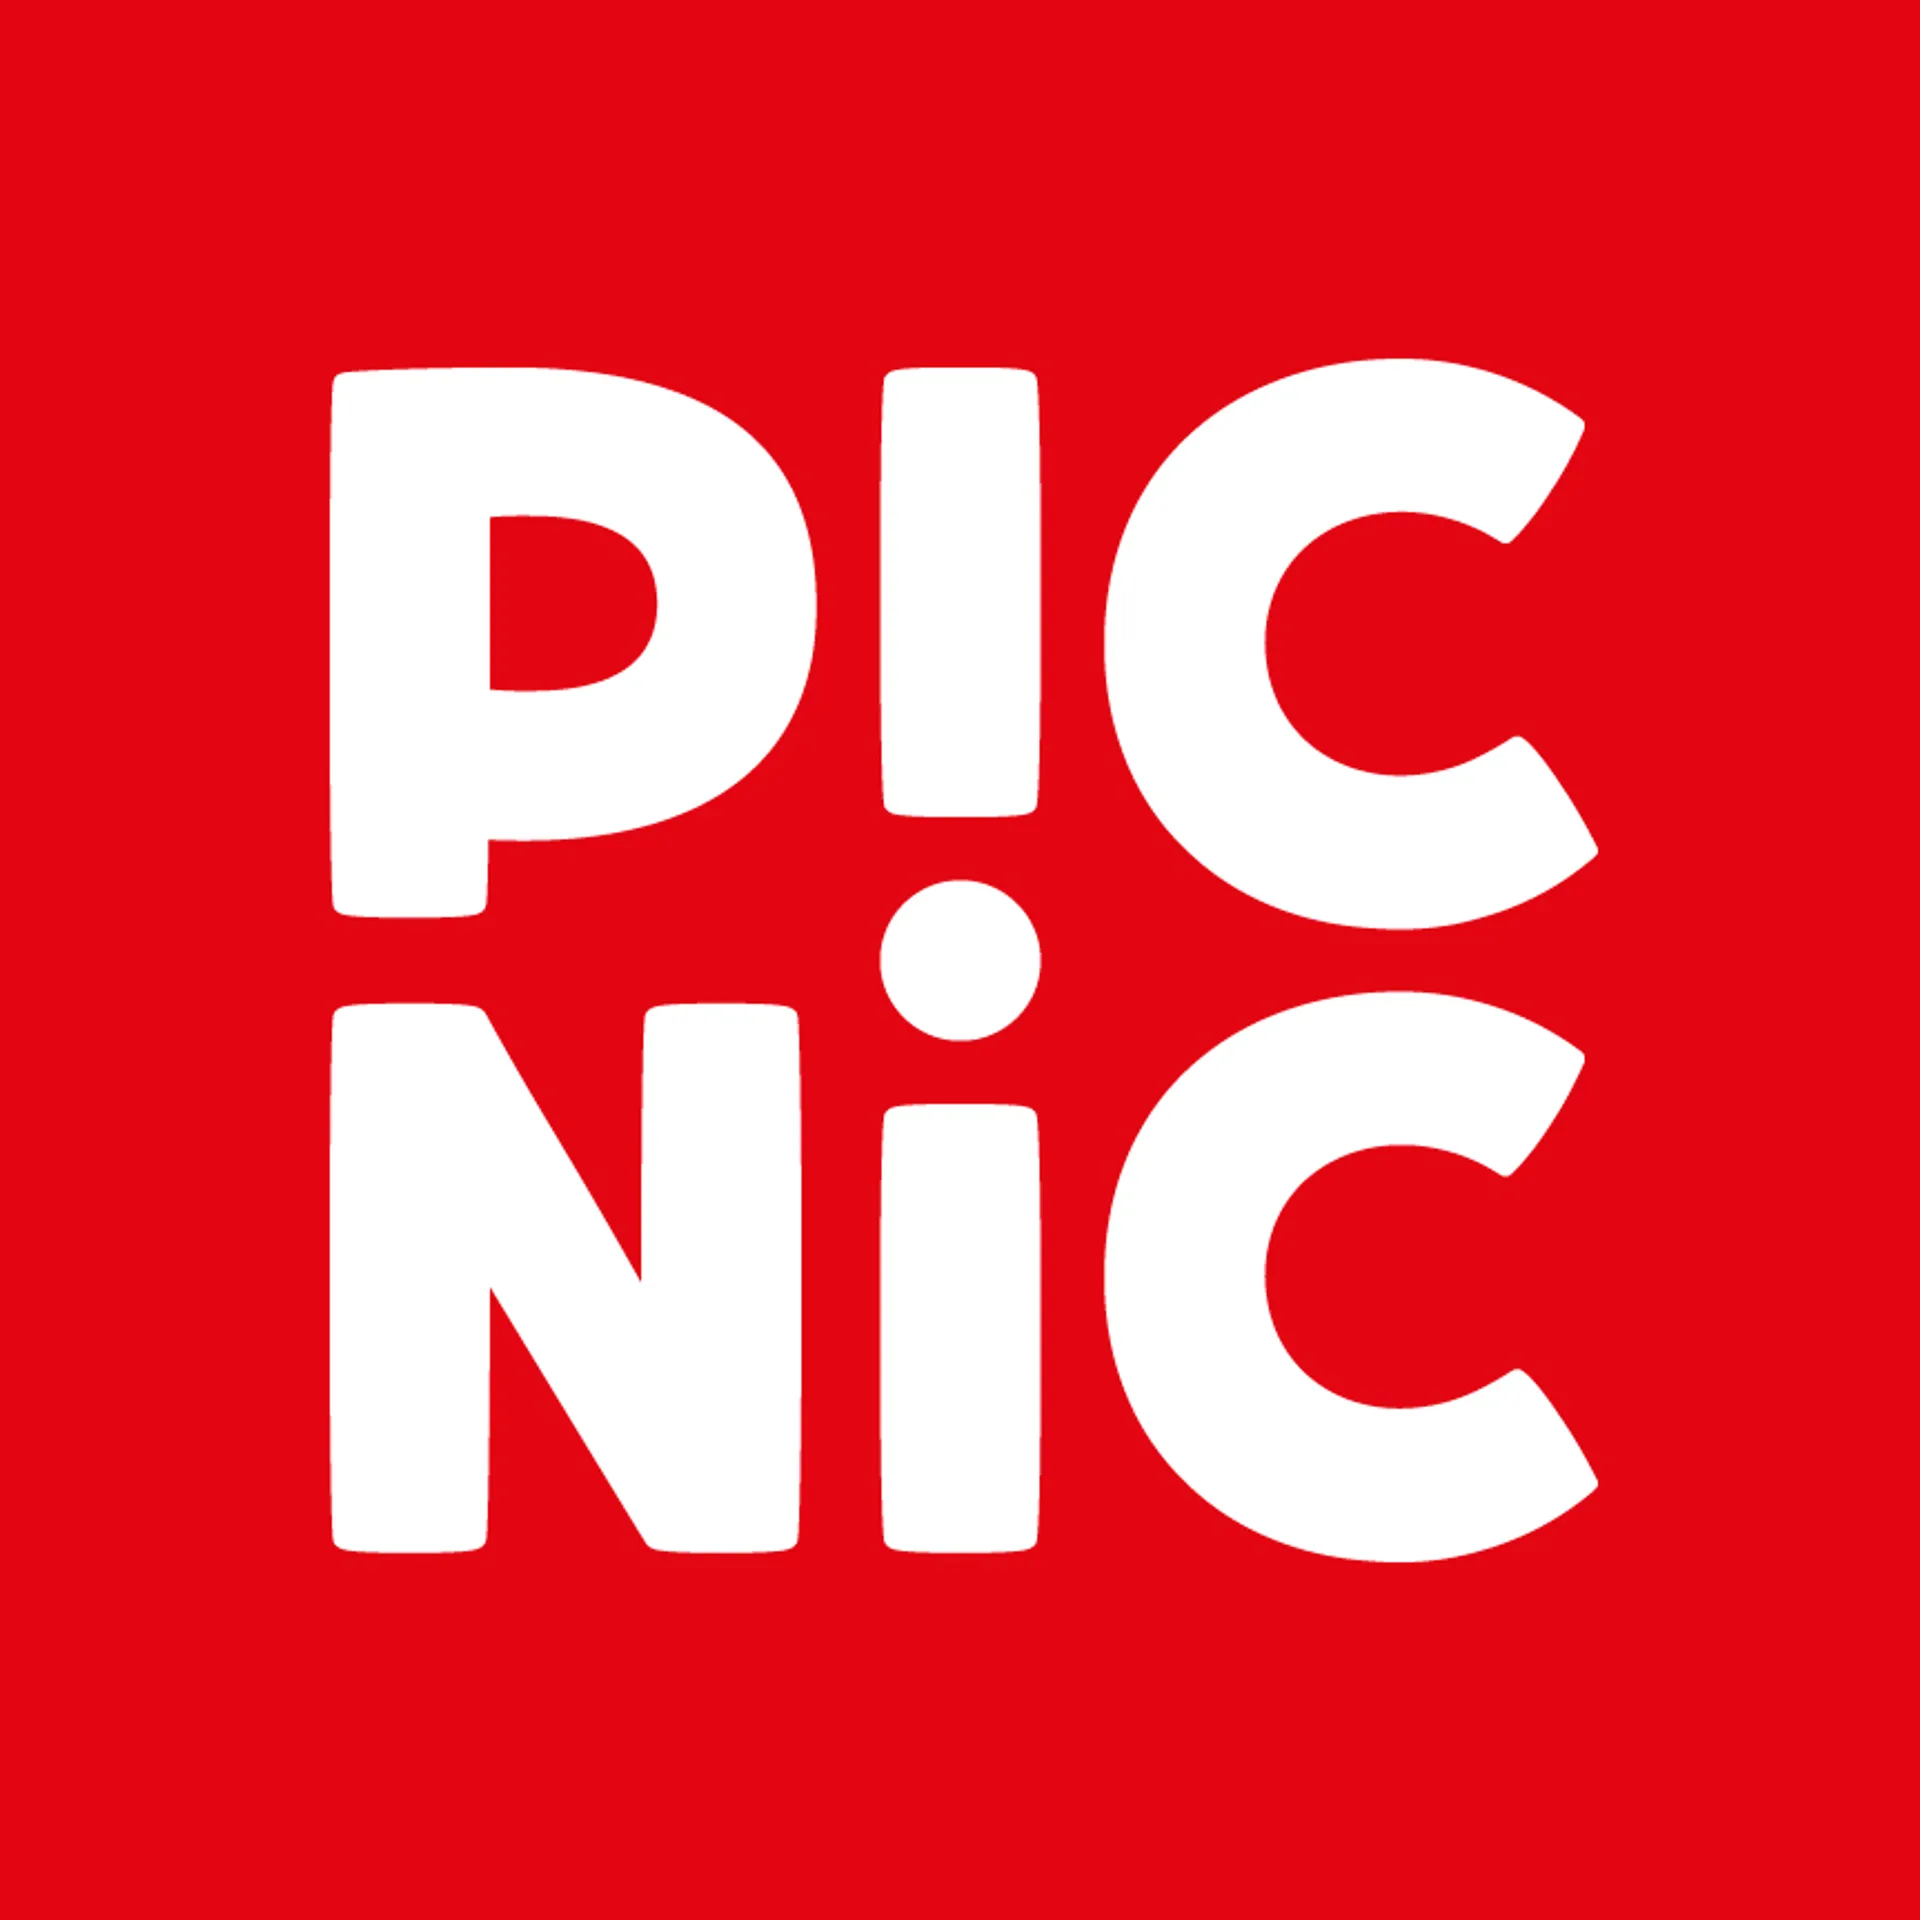 PICNIC logo in de folder van deze week